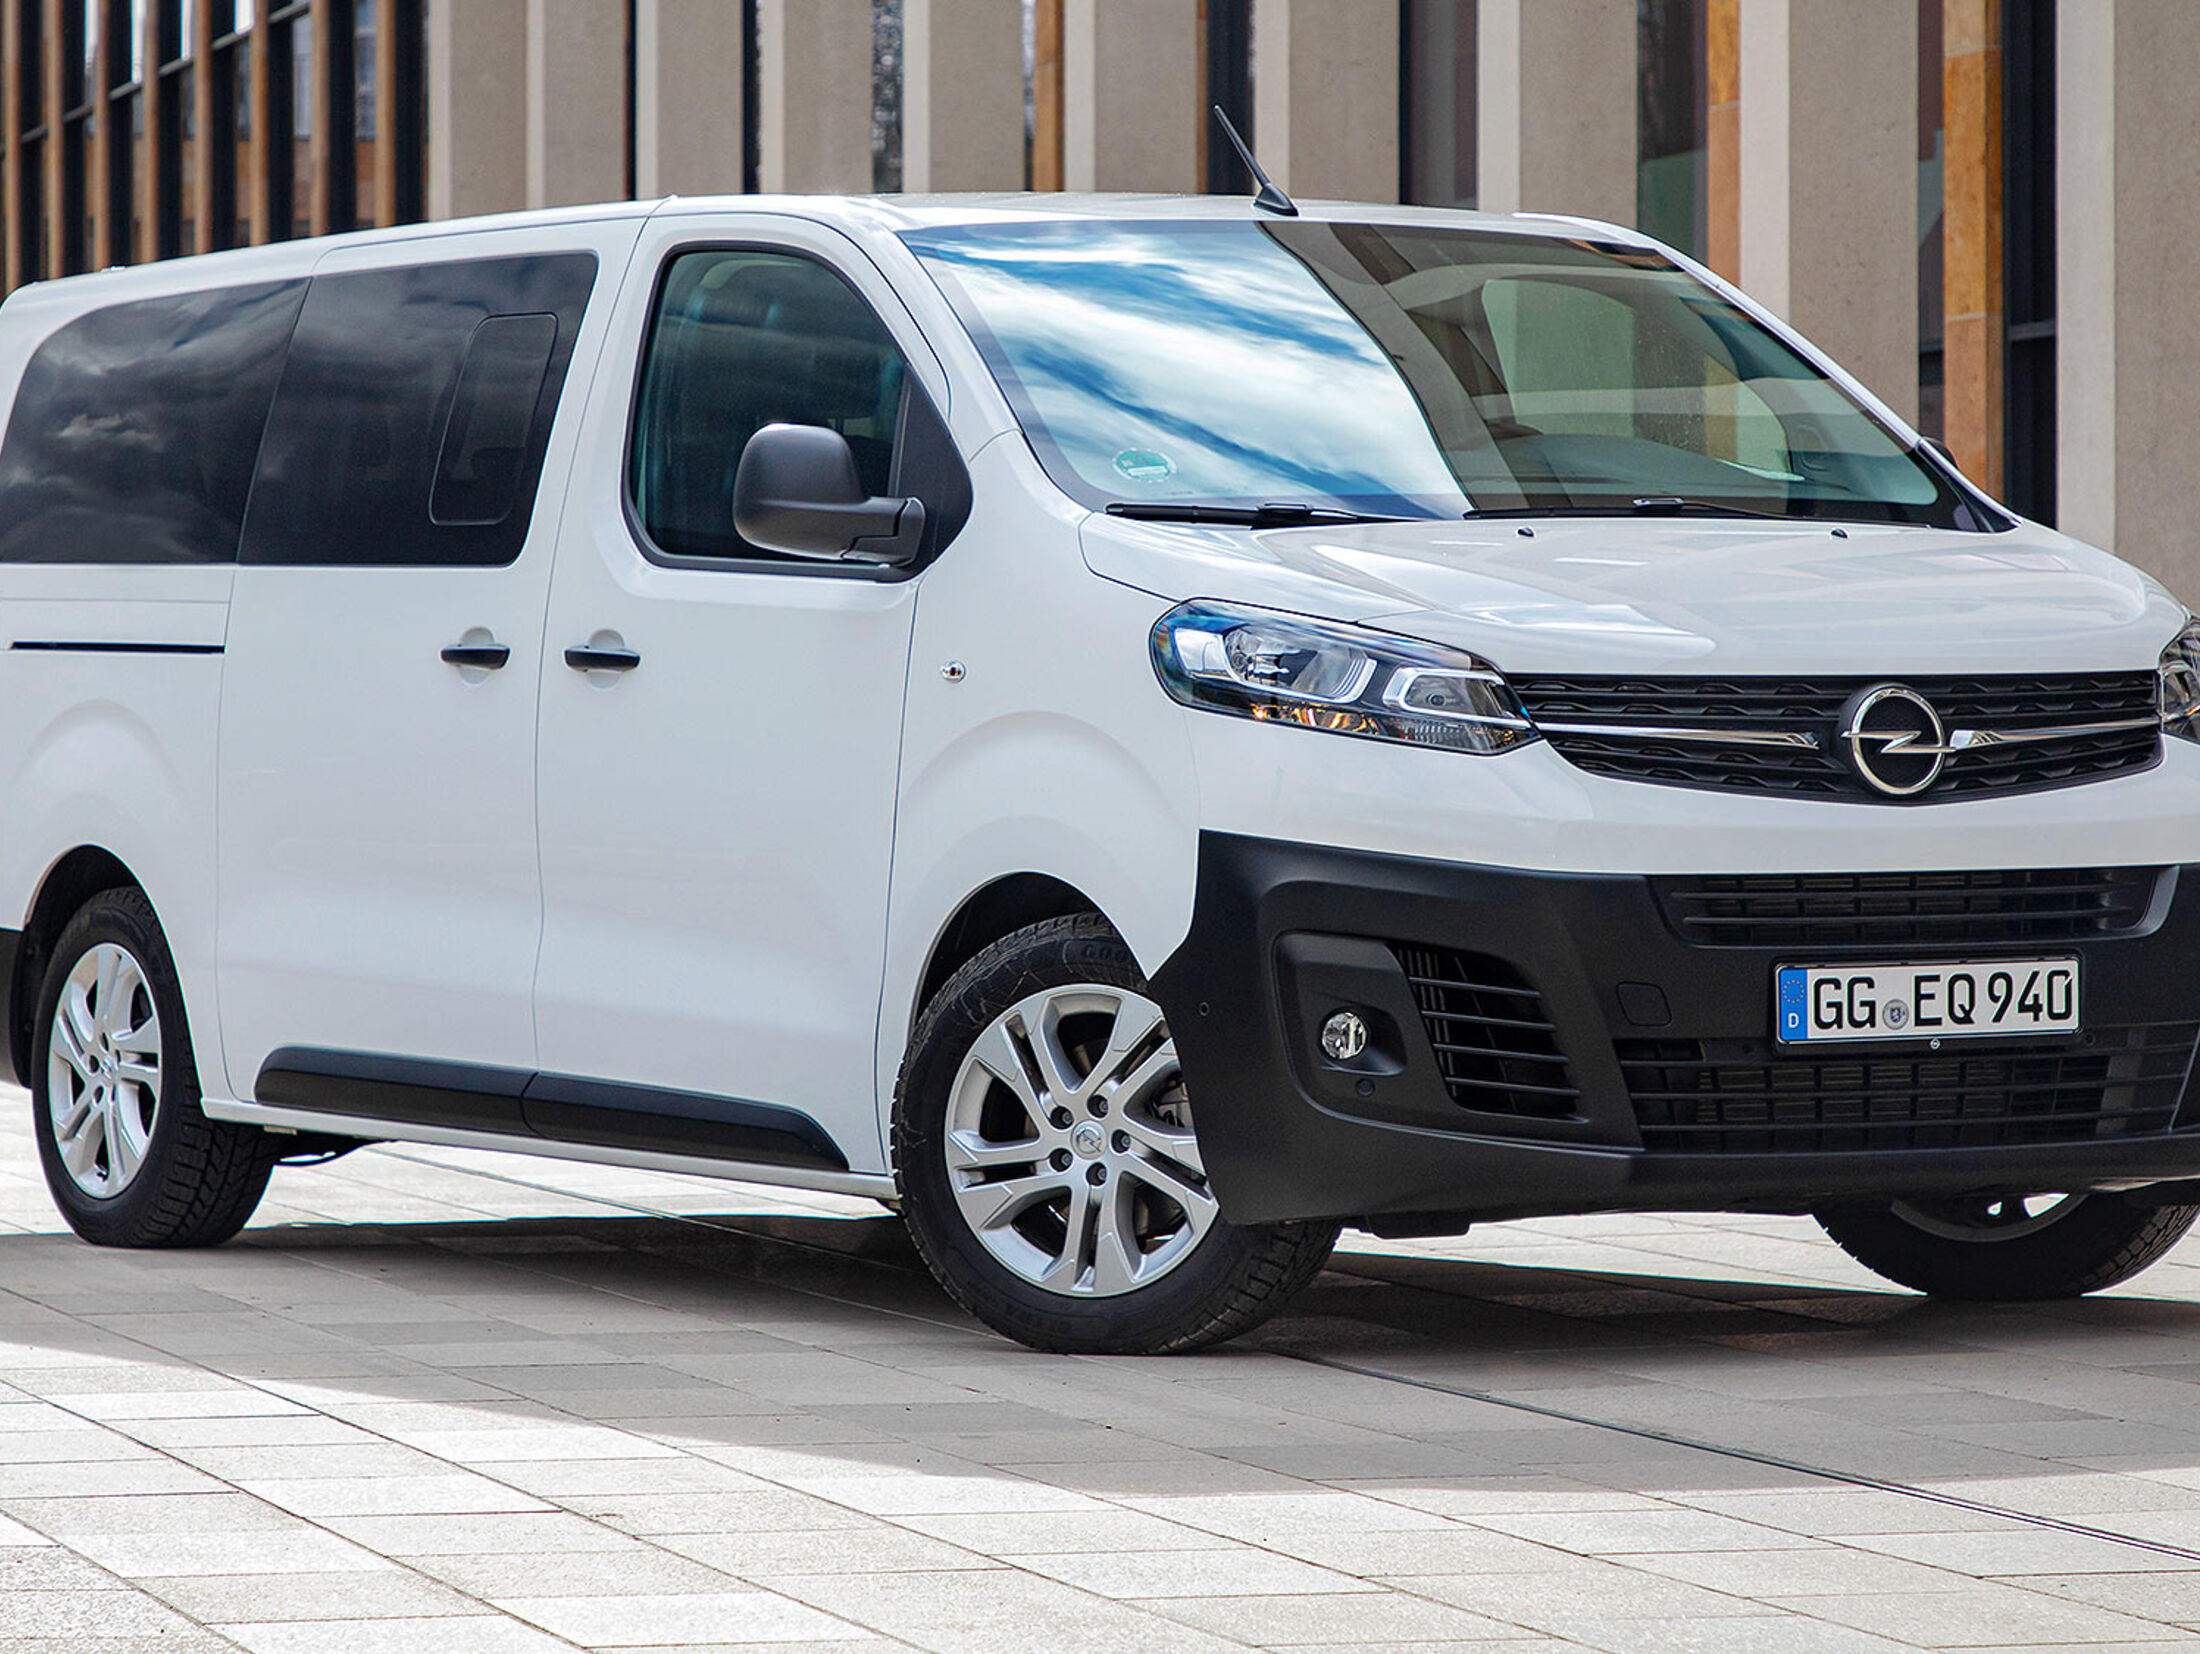 Opel Vivaro Kombi: Personentransporter für Familie oder Gewerbe